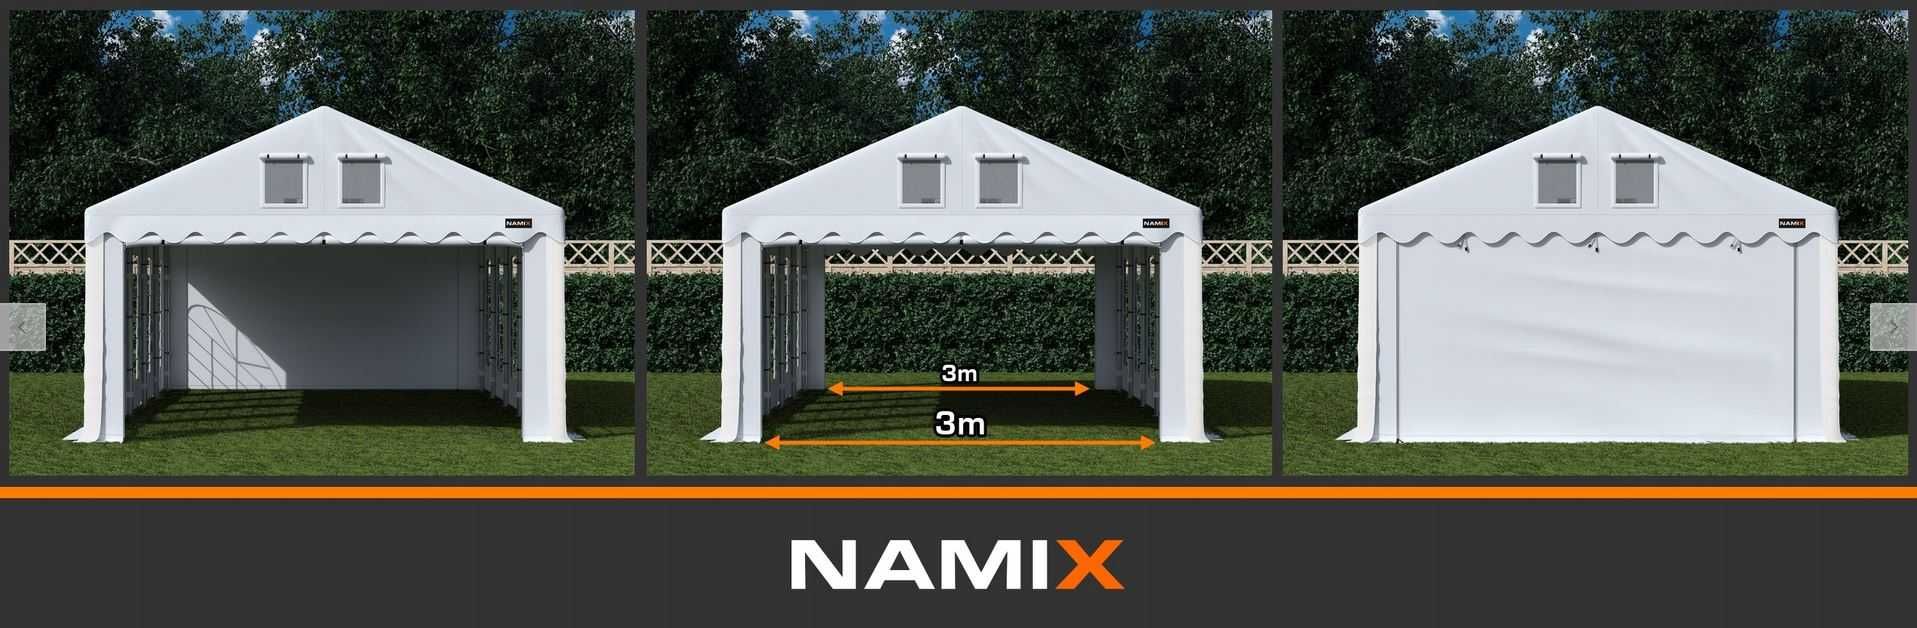 Namiot PRESTIGE 4x8-3m ogrodowy imprezowy garaż wzmocniony PVC 560g